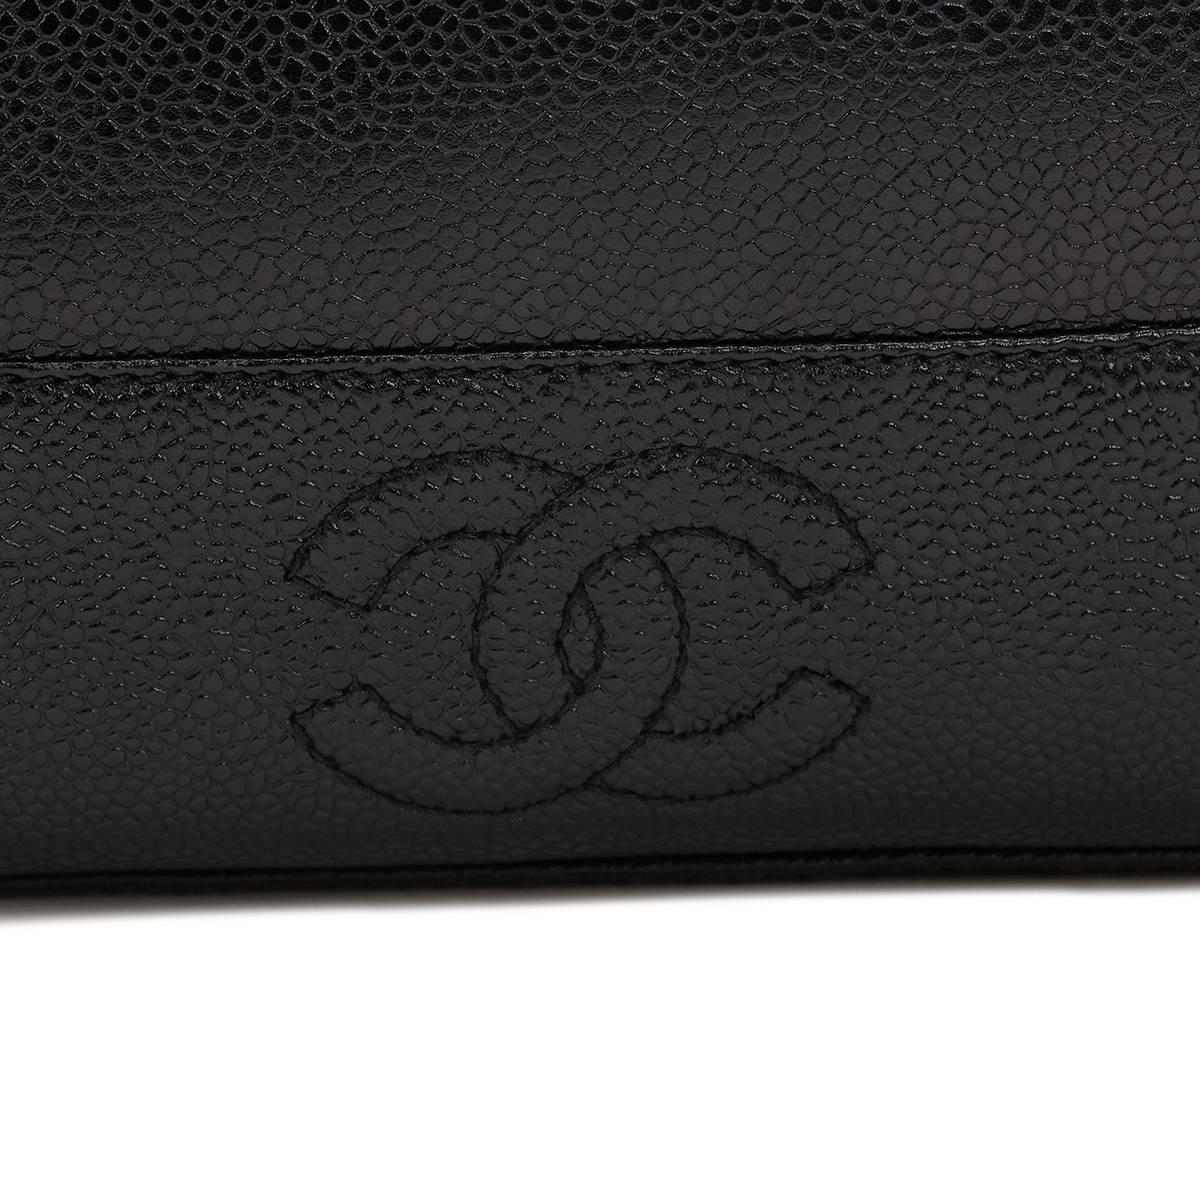 1996 Chanel Black Caviar Leather Vintage Timeless Shoulder Bag 3